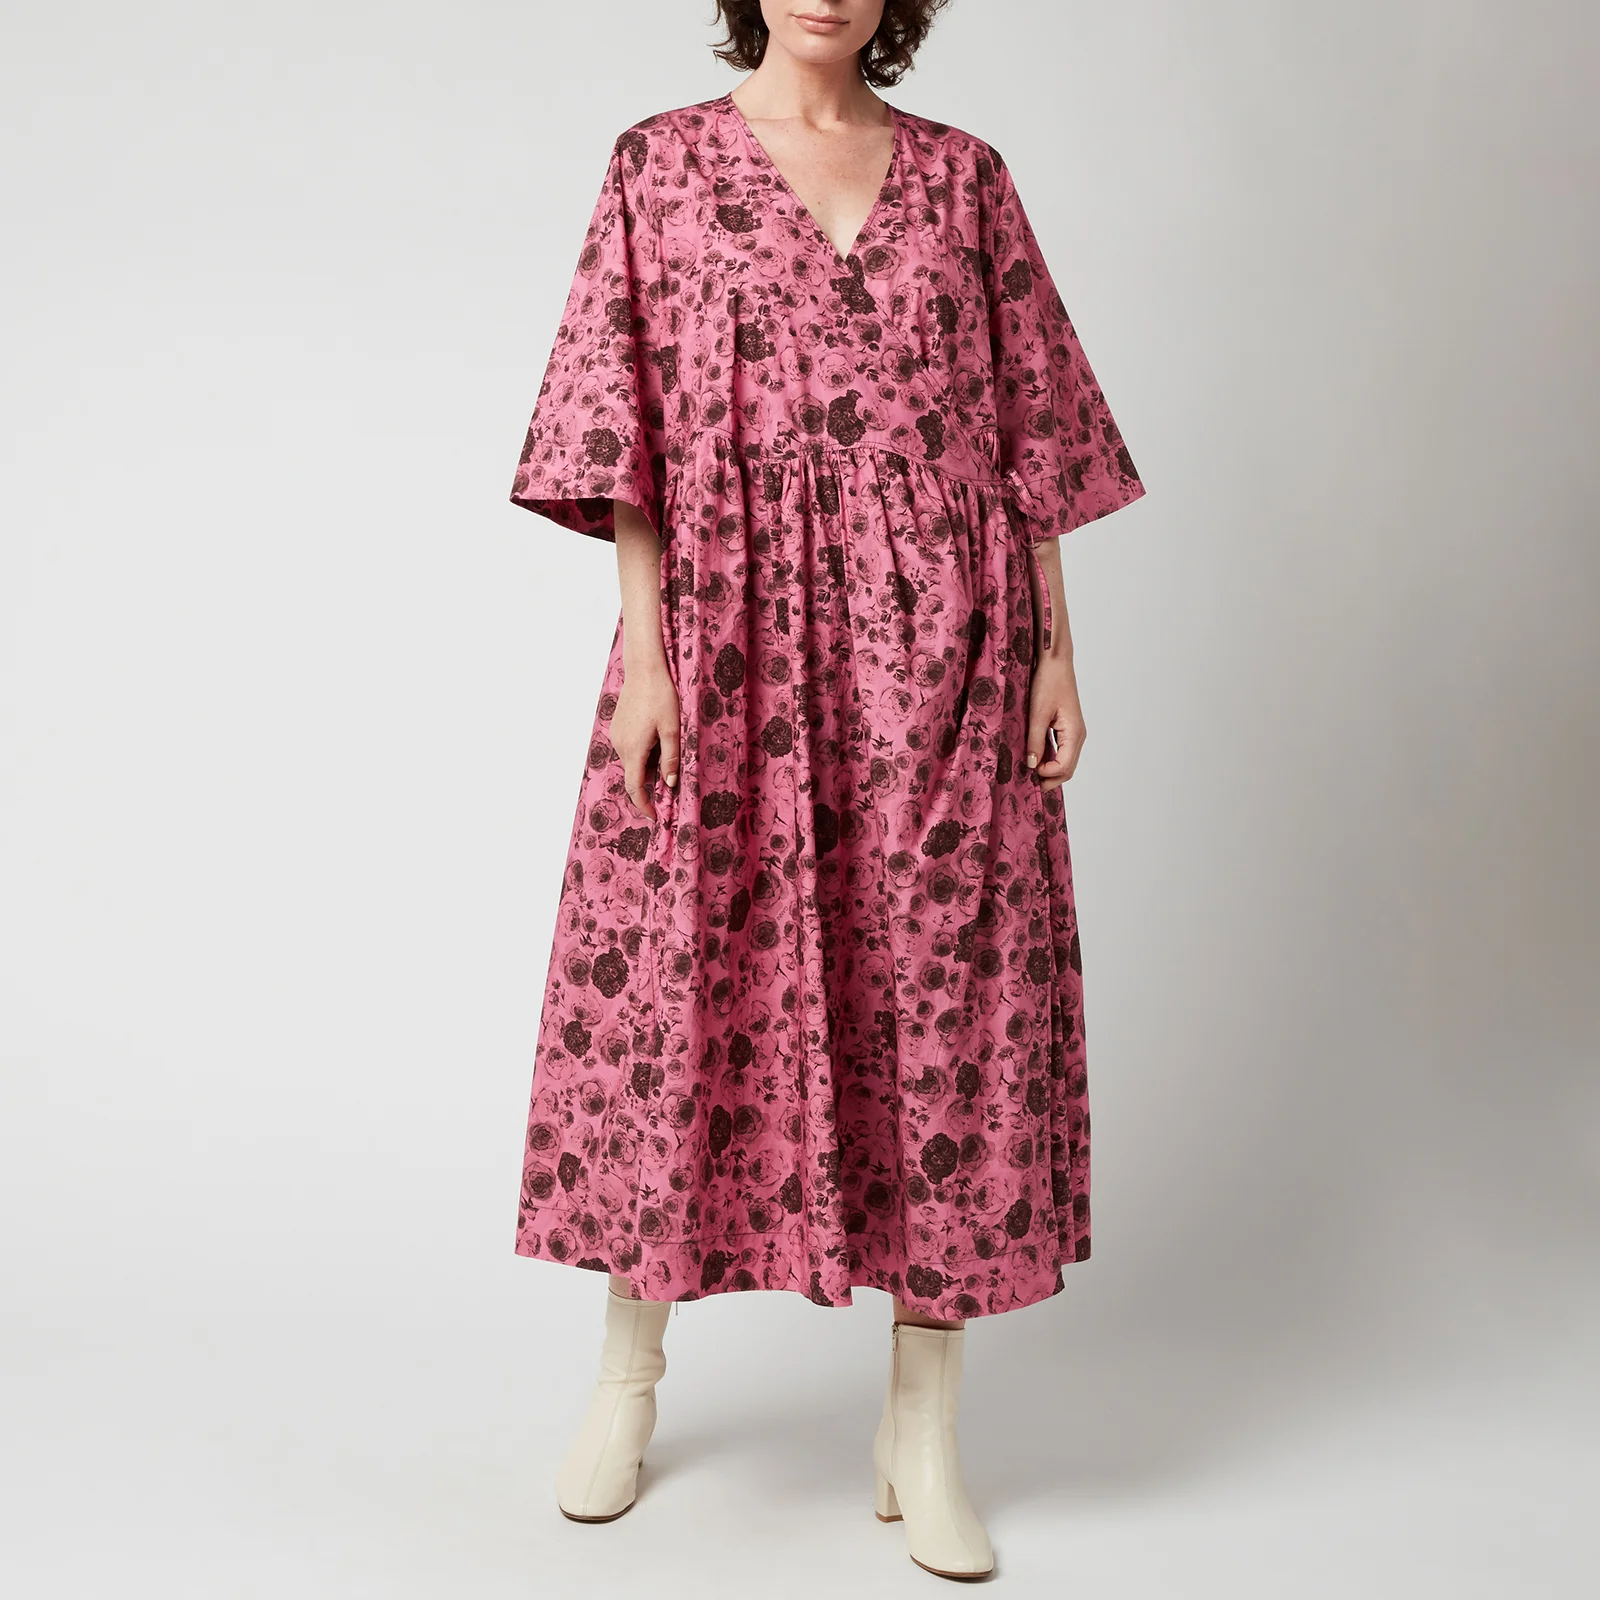 Ganni Women's Printed Cotton Poplin Dress - Shocking Pink Image 1